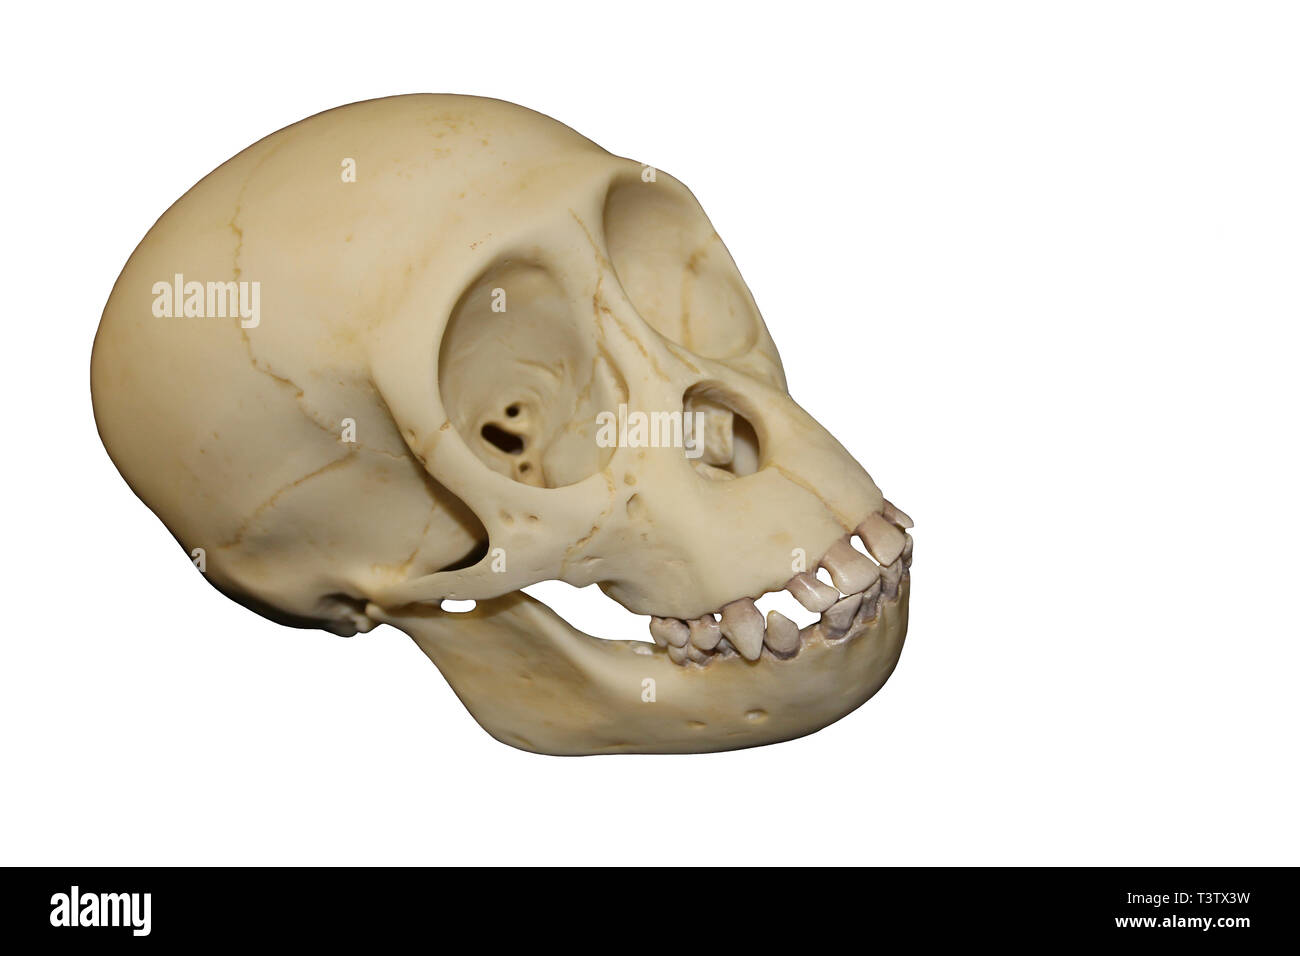 Jeune chimpanzé crâne Banque D'Images